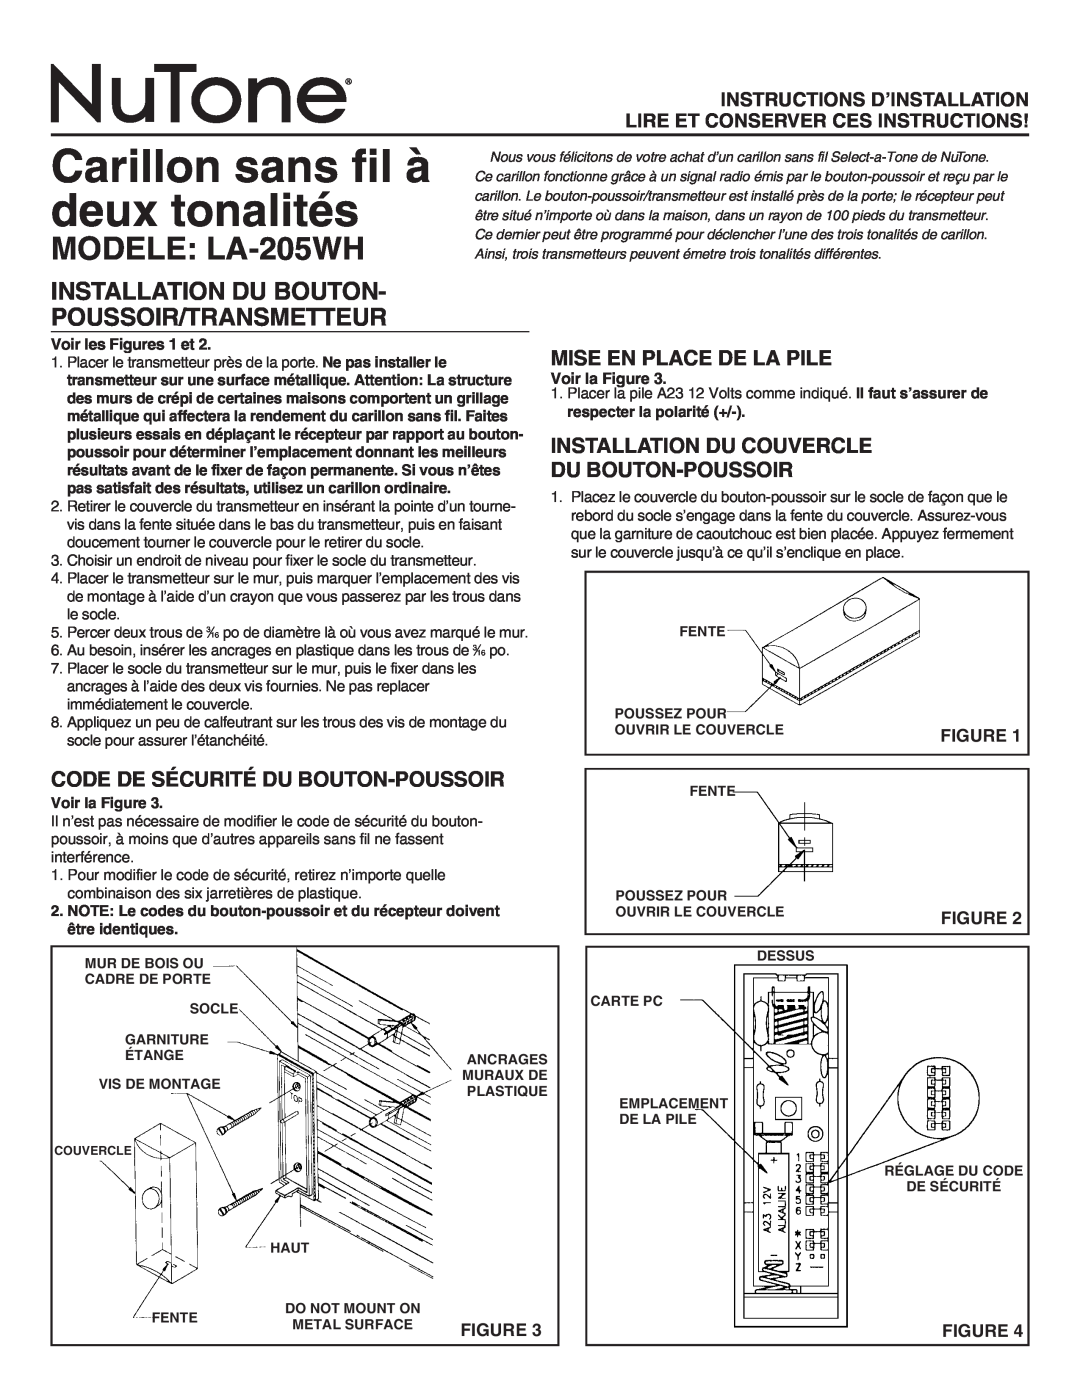 NuTone manual Carillon sans fil à deux tonalités, MODELE LA-205WH, Installation Du Bouton Poussoir/Transmetteur 